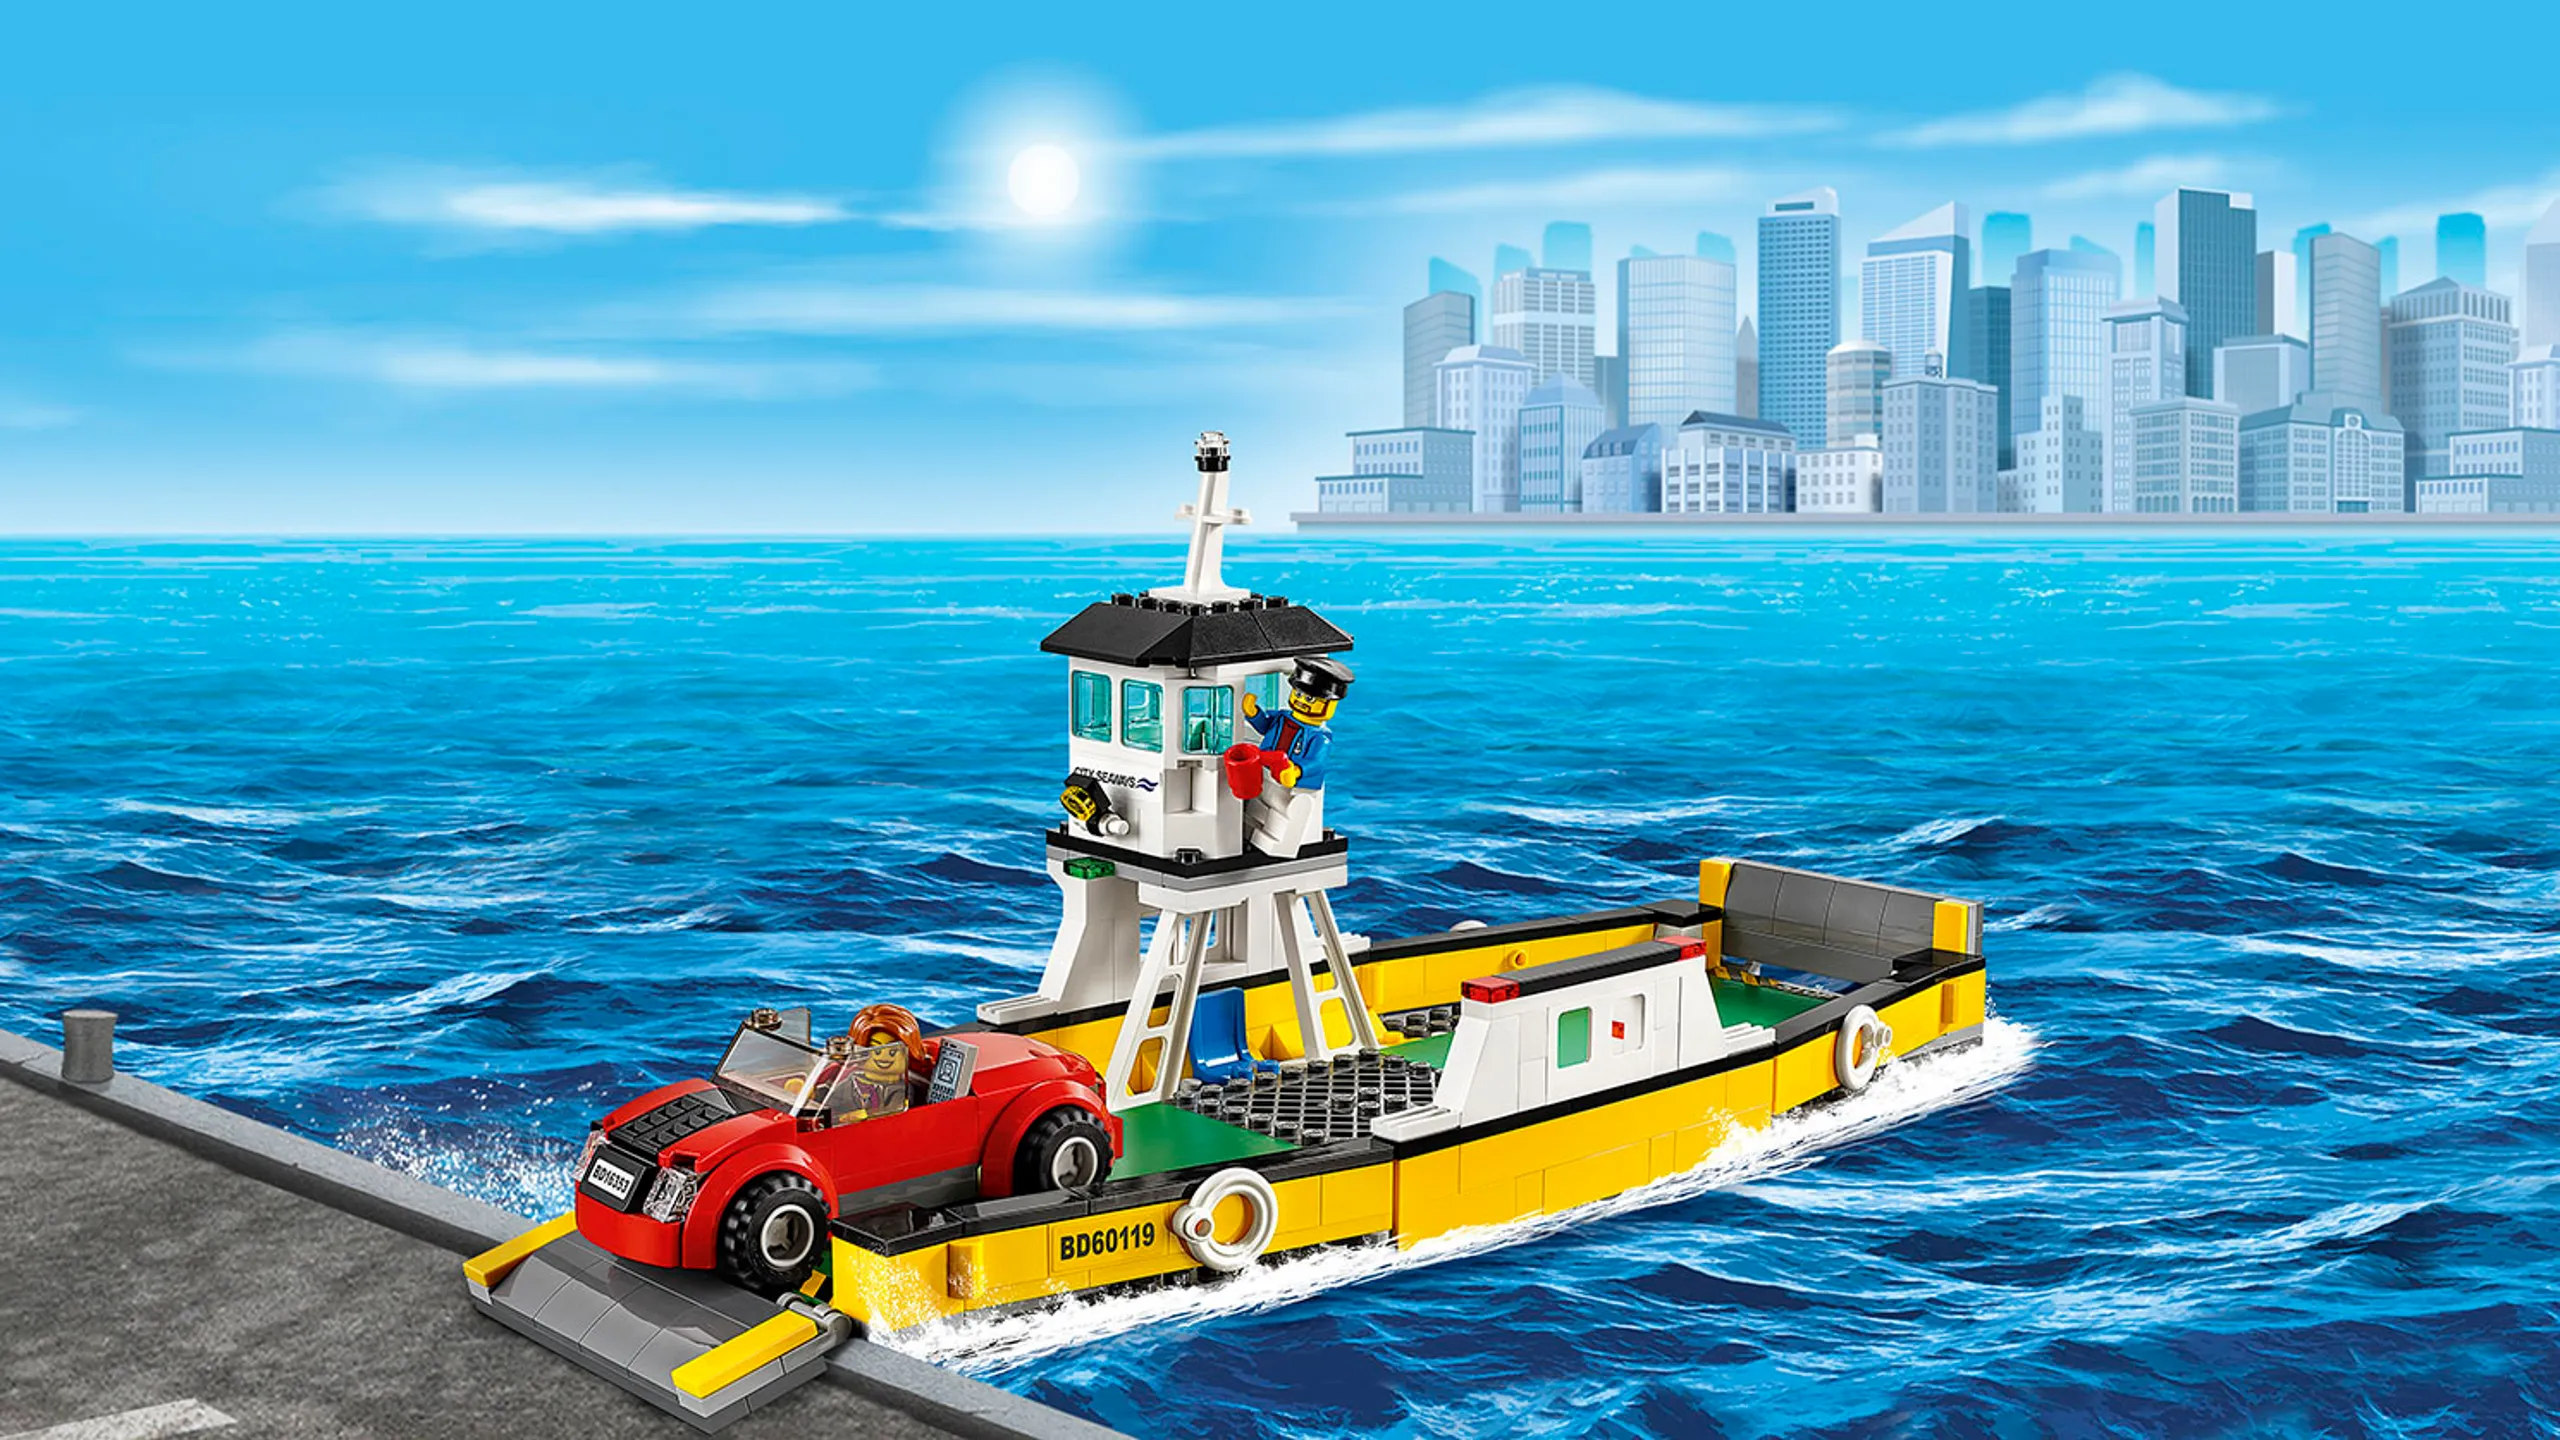 LEGO City Fantastiska fordon bilfärja – Färja 60119